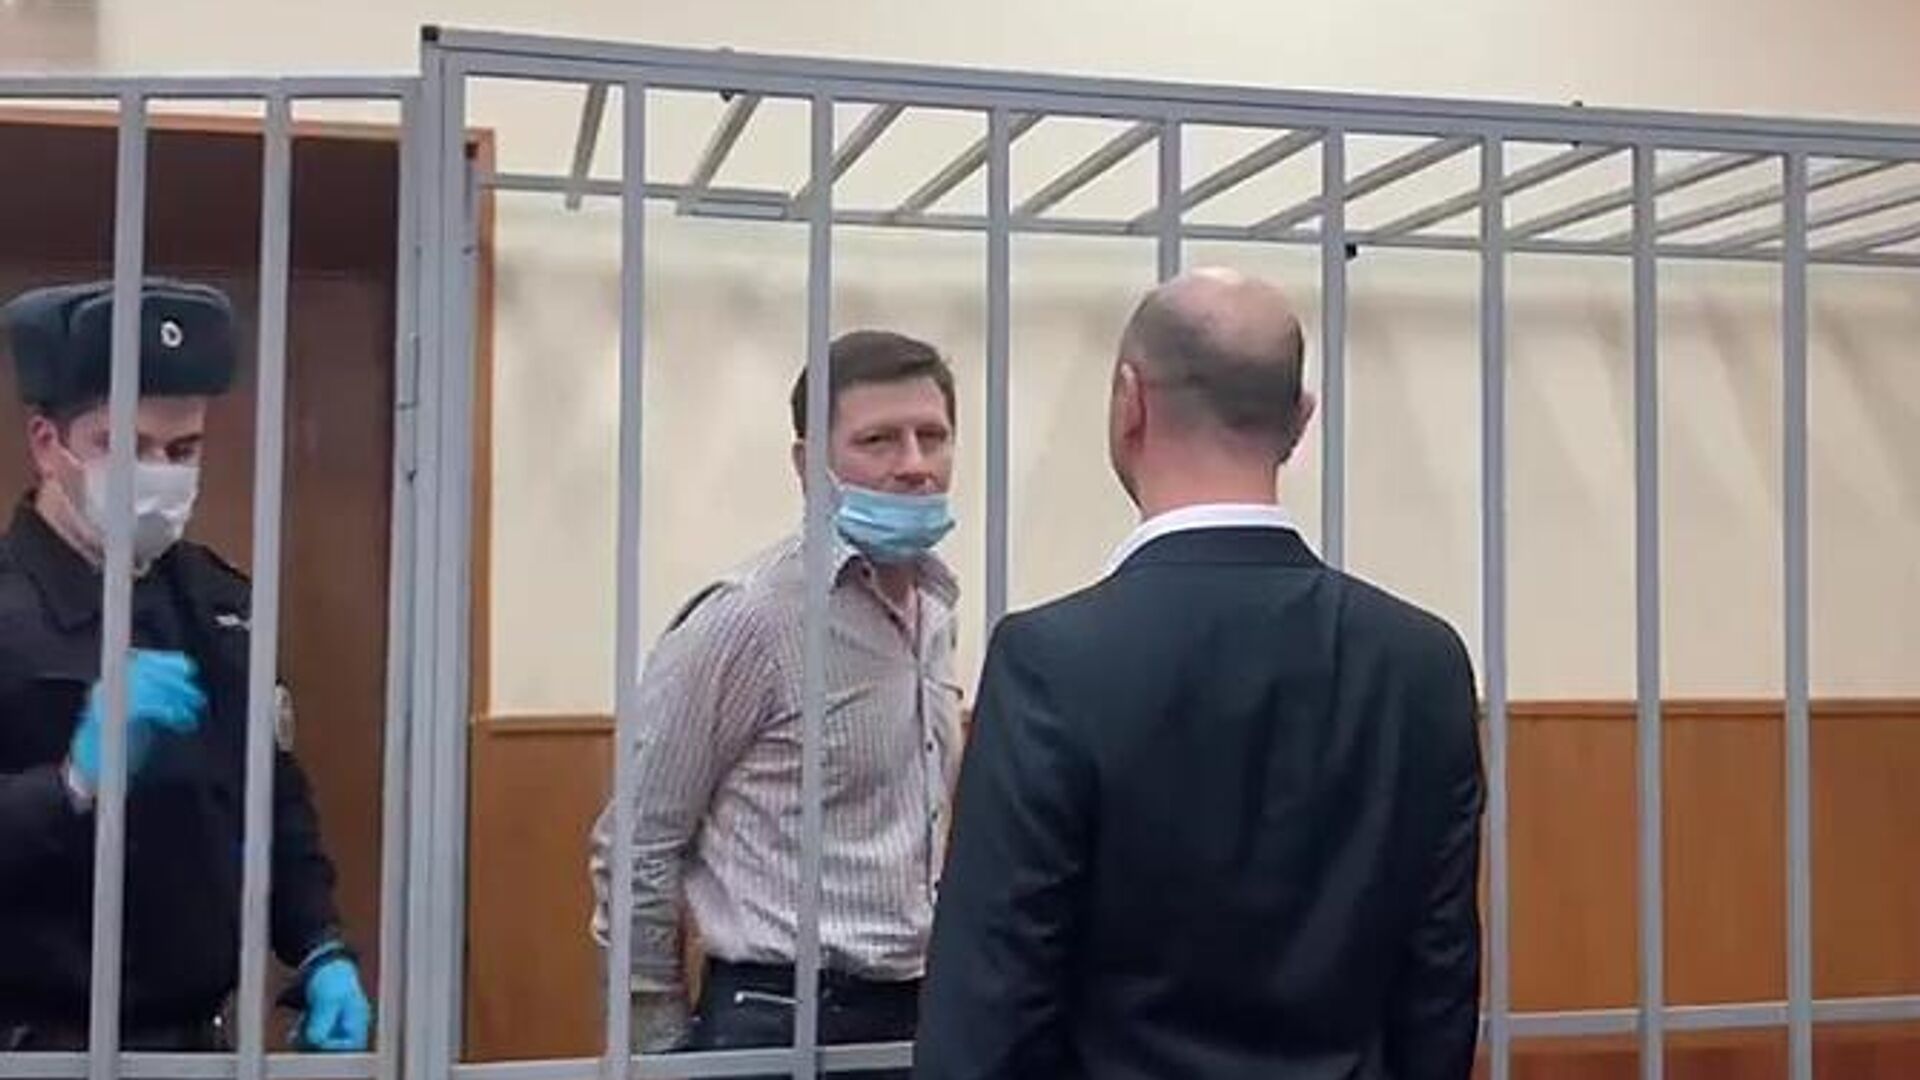 Жириновский попросил направить Фургала в медцентр на обследование